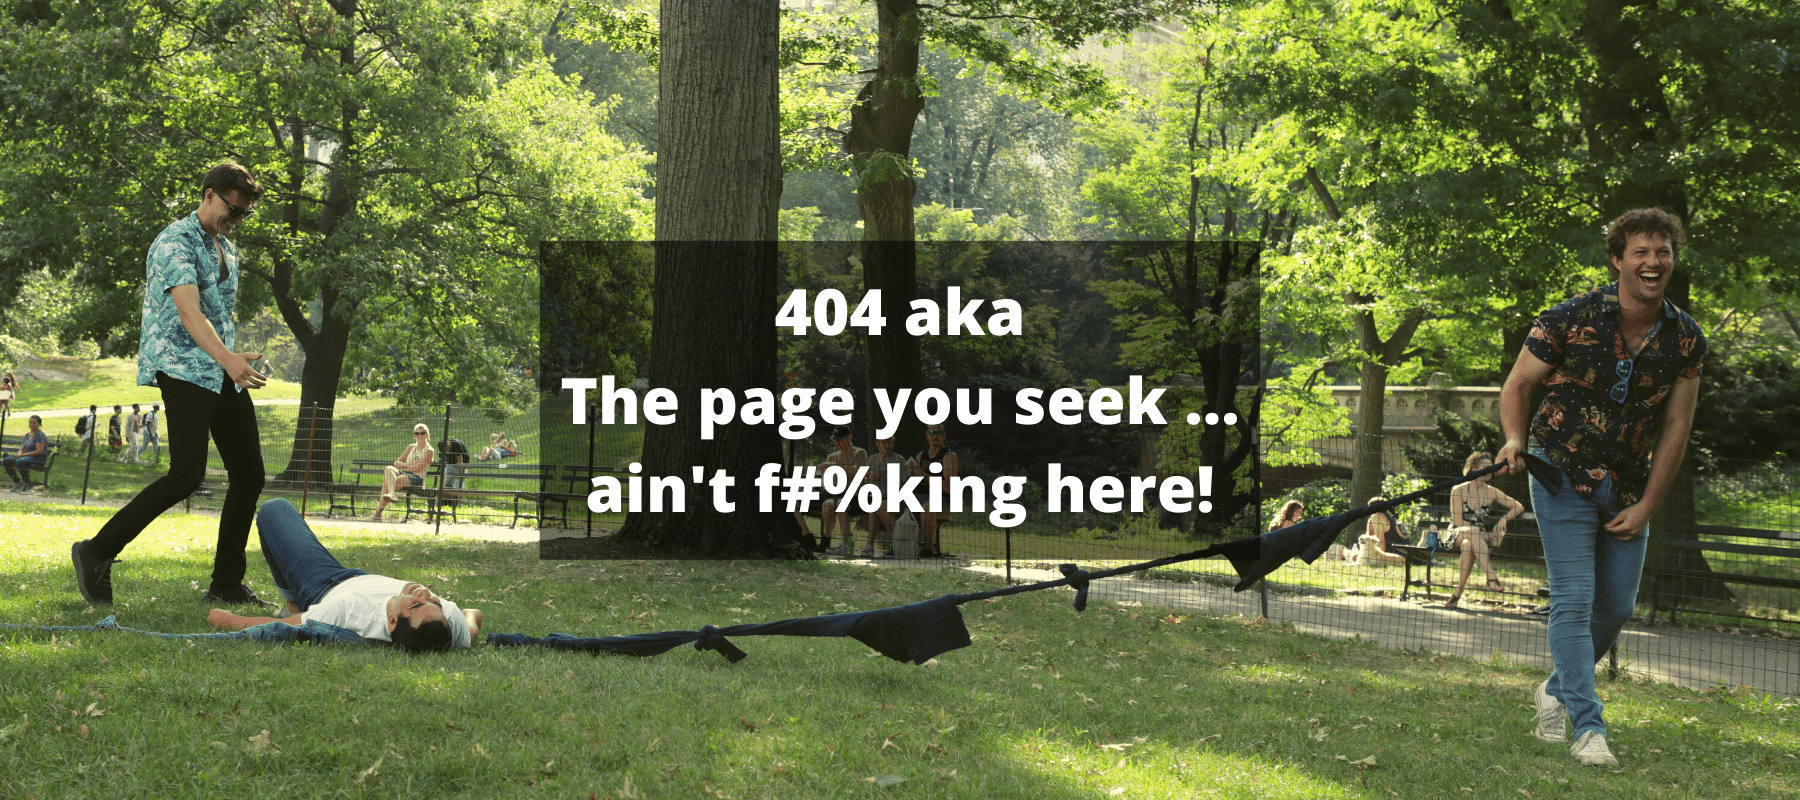 404 aka The page you seek... ain't f#%king here!